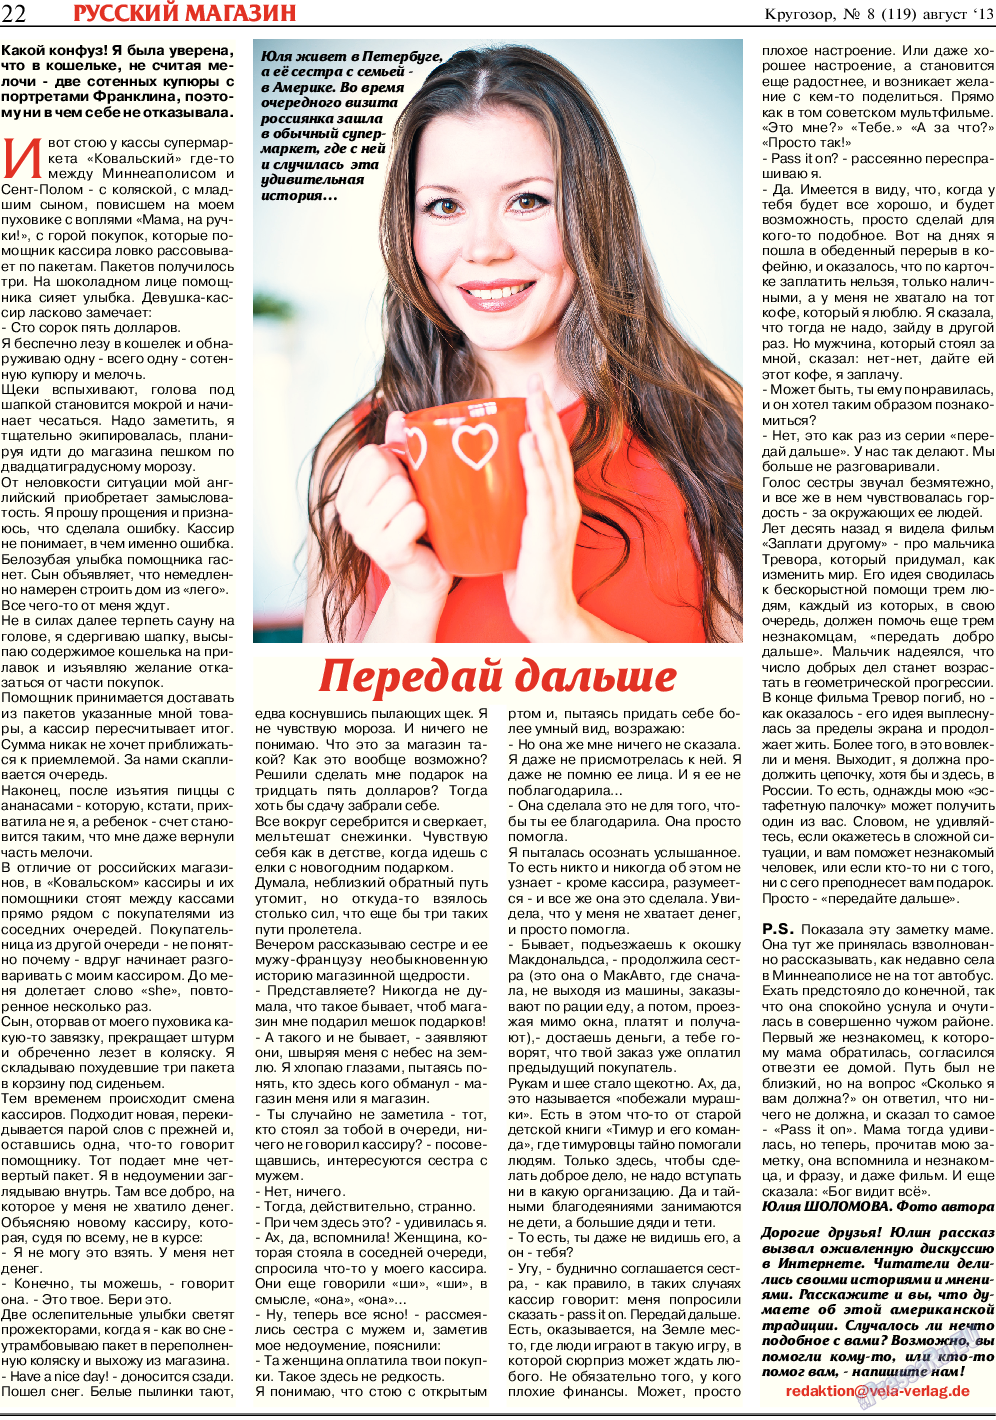 Кругозор, газета. 2013 №8 стр.22